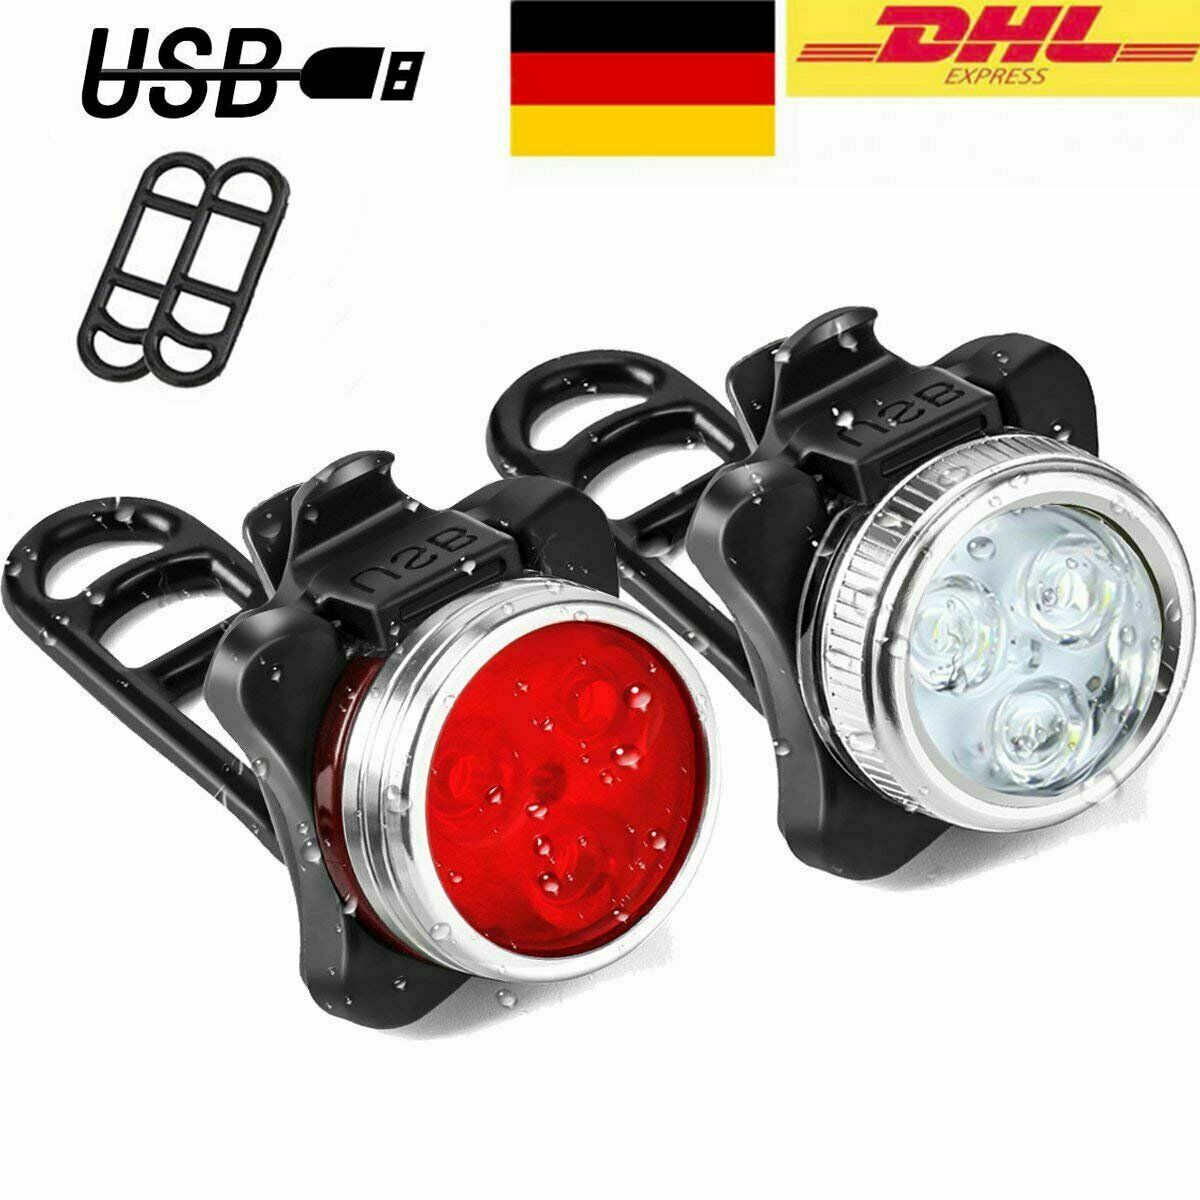 LED Akku Fahrrad Licht USB Beleuchtung Set 600 LUX Scheinwerfer Rücklicht Lampe